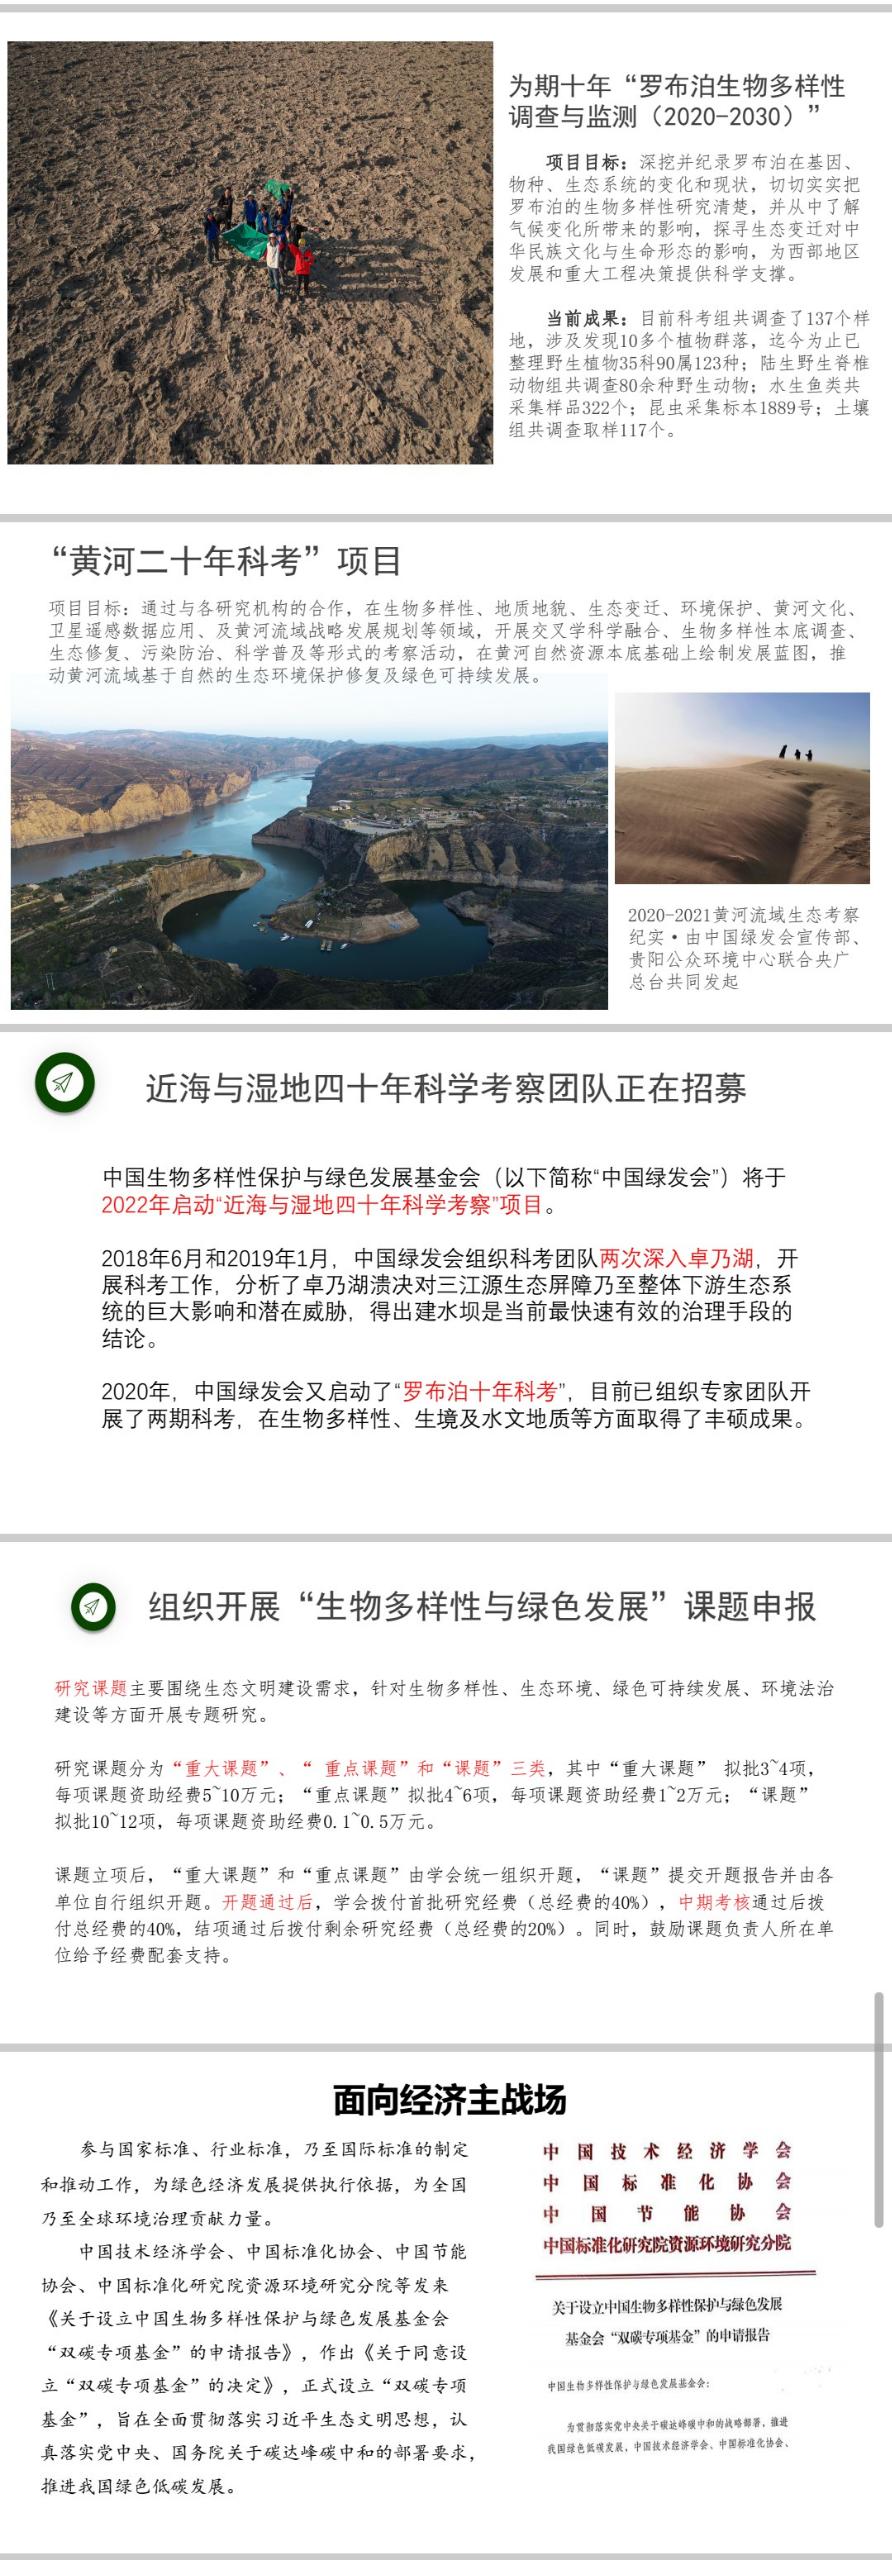 中国生物多样性保护与绿色发展基金会简介5.jpg